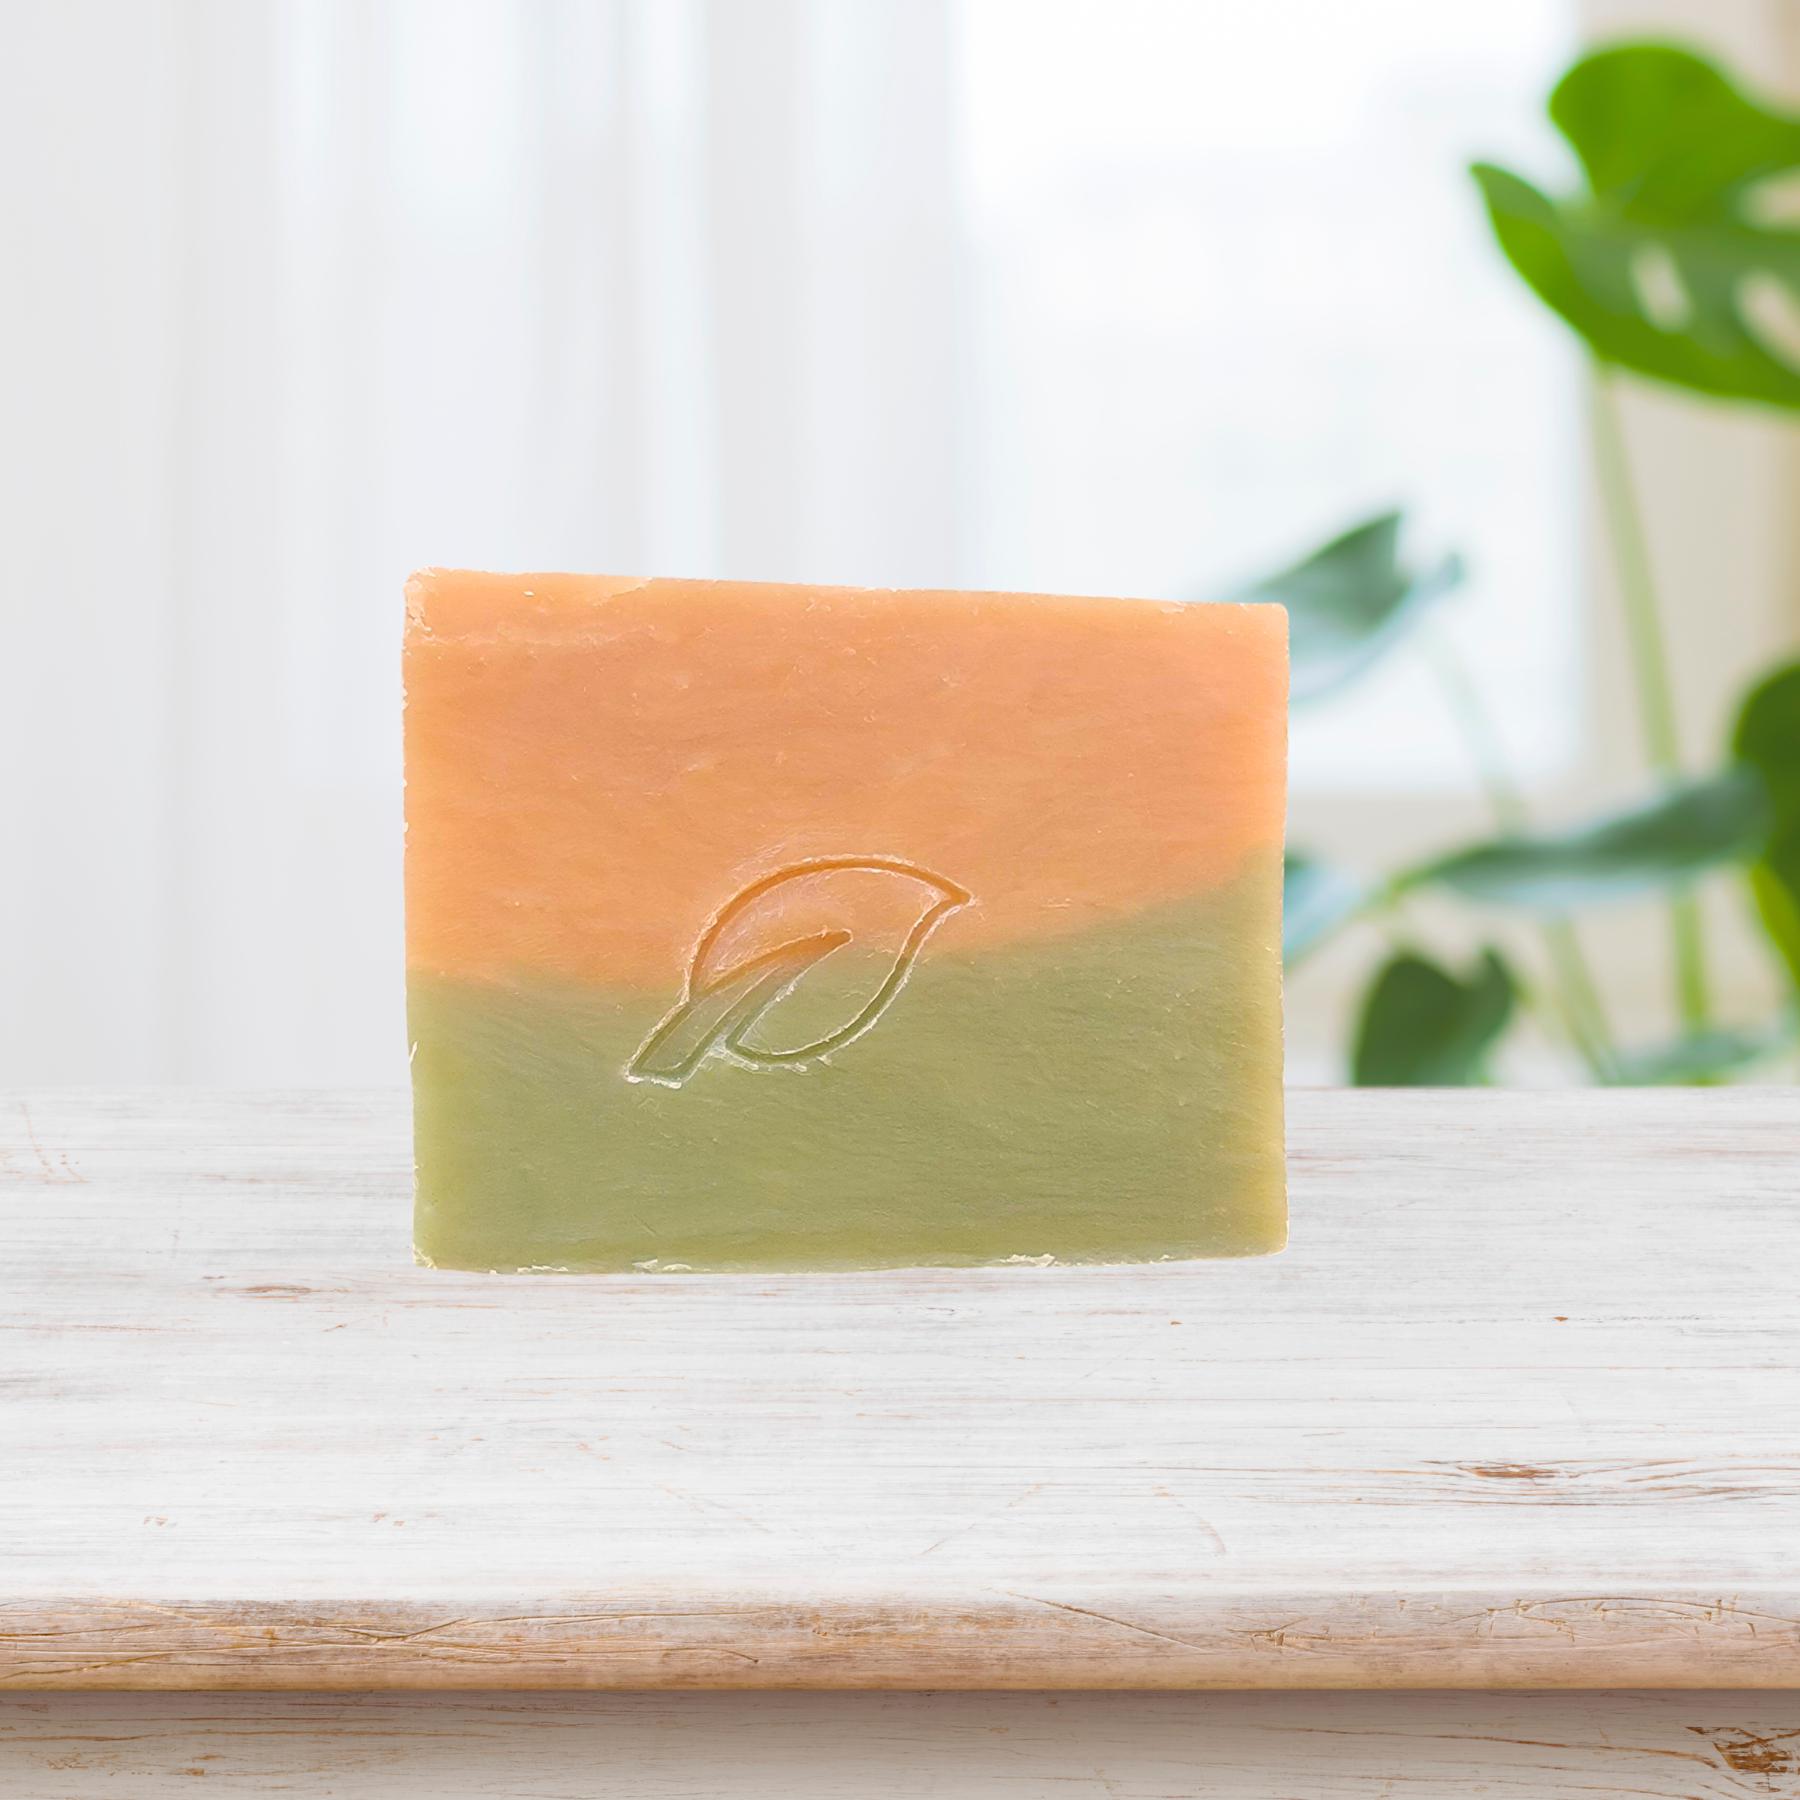 Everything Autumn Natural Handmade Bar Soap, 4 oz - Seasonal-Bar Soap-Perfectly Natural Soap